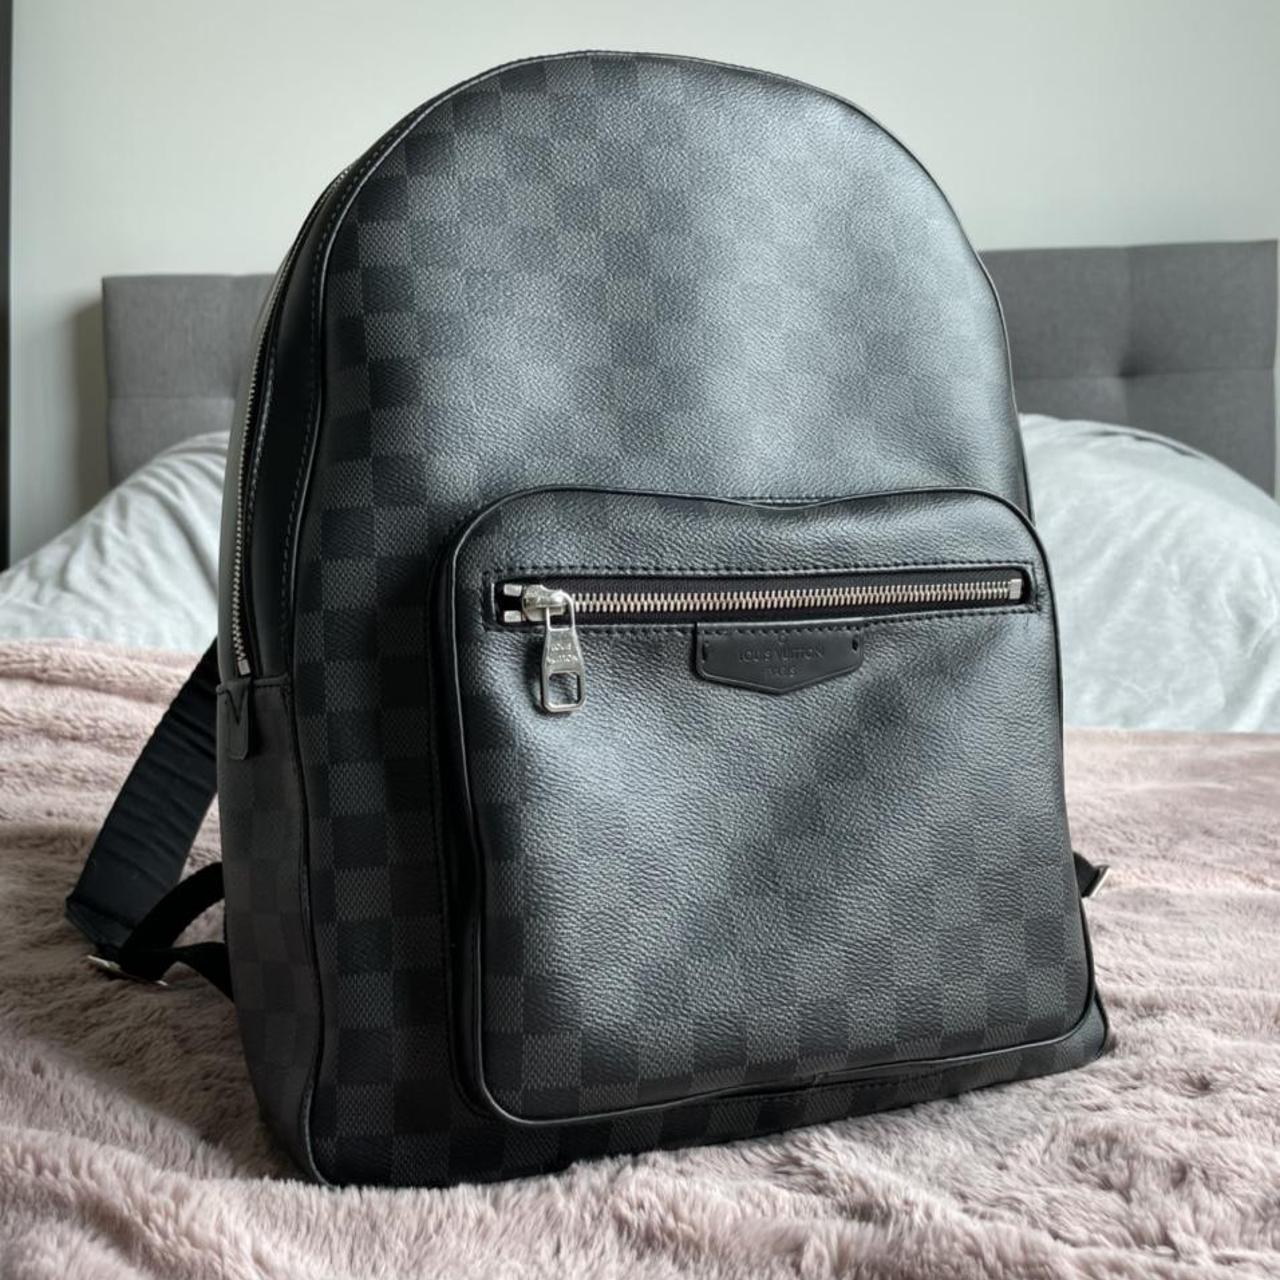 Louis Vuitton Josh Backpack in Damier Graphite. Worn